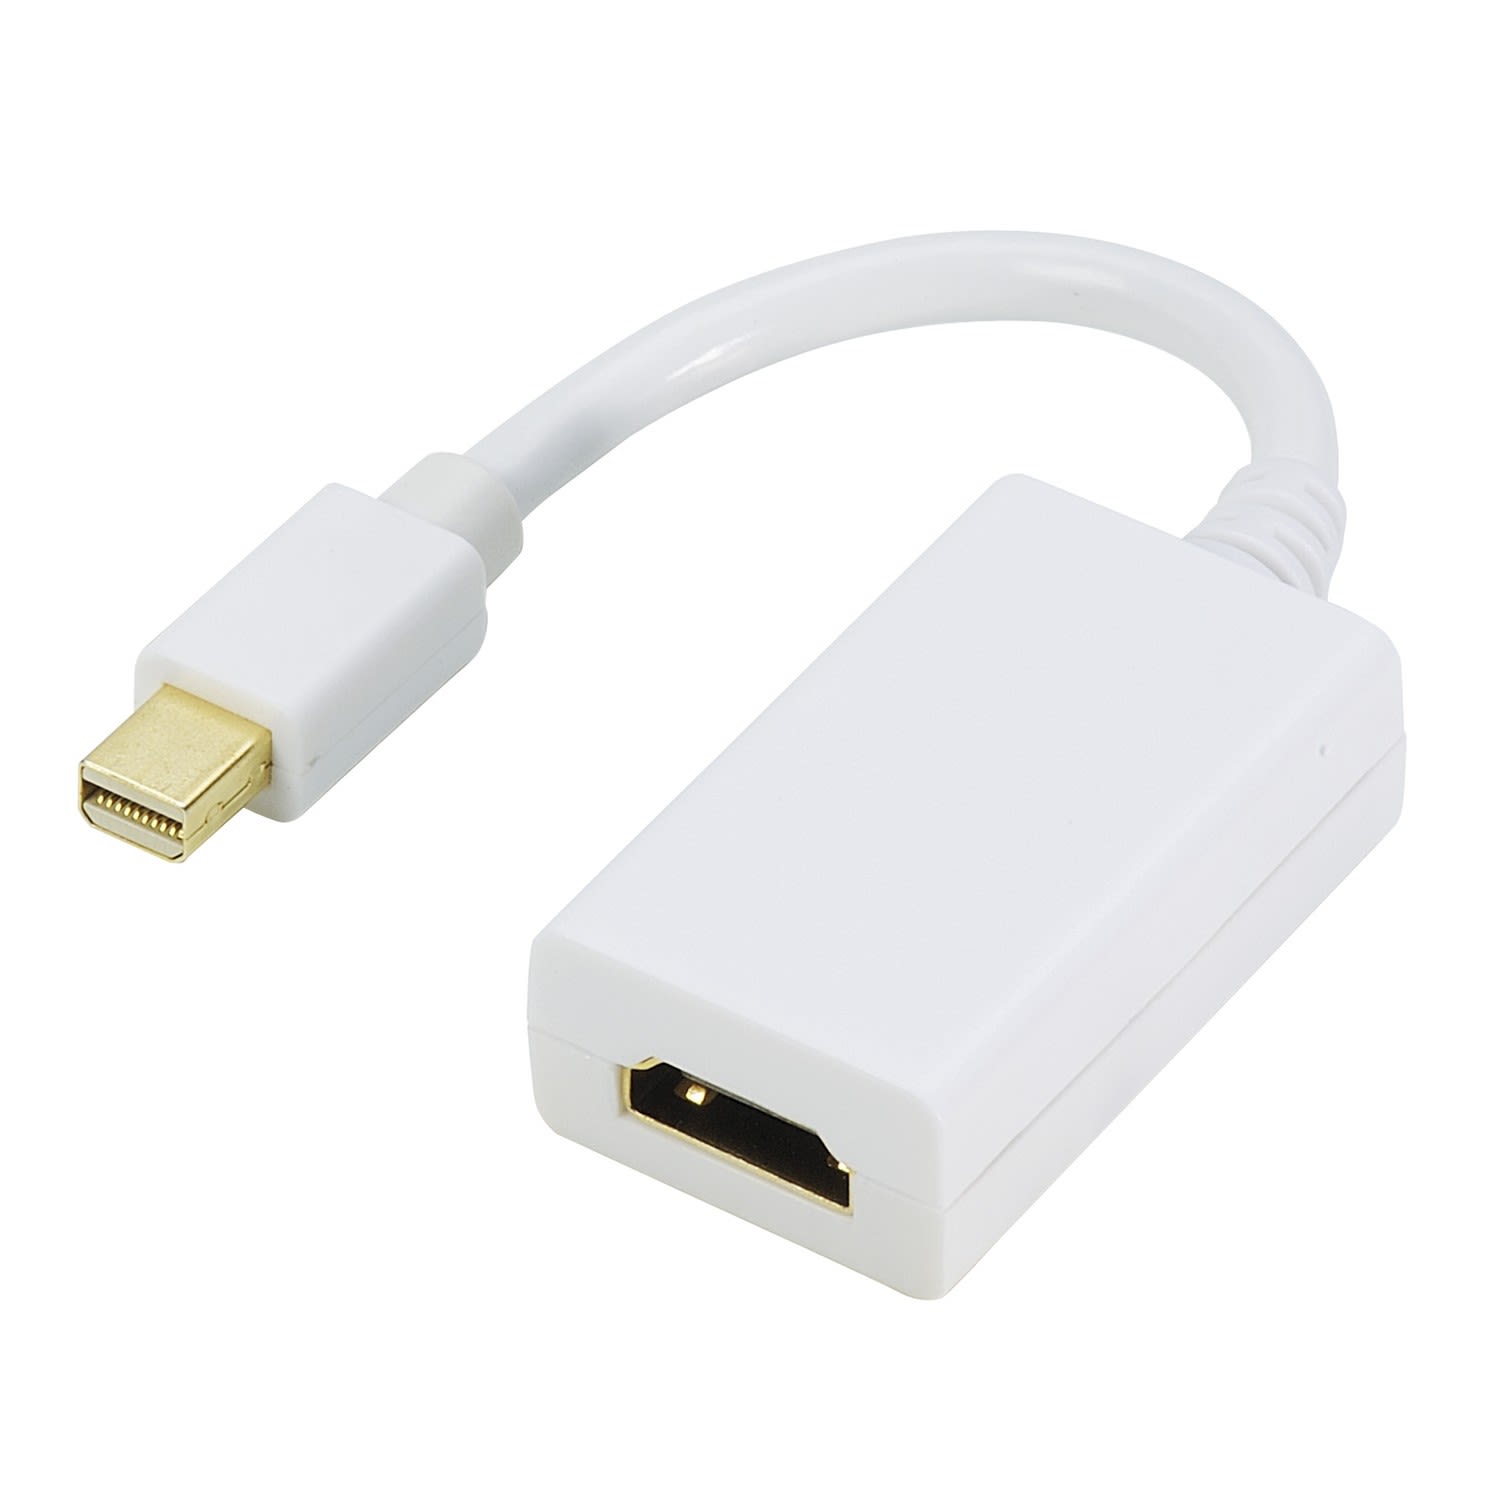 Erard - Convertisseur mini DisplayPort 1.2 M vers HDMI A F - 4K/30ips - plug&play - 0m15